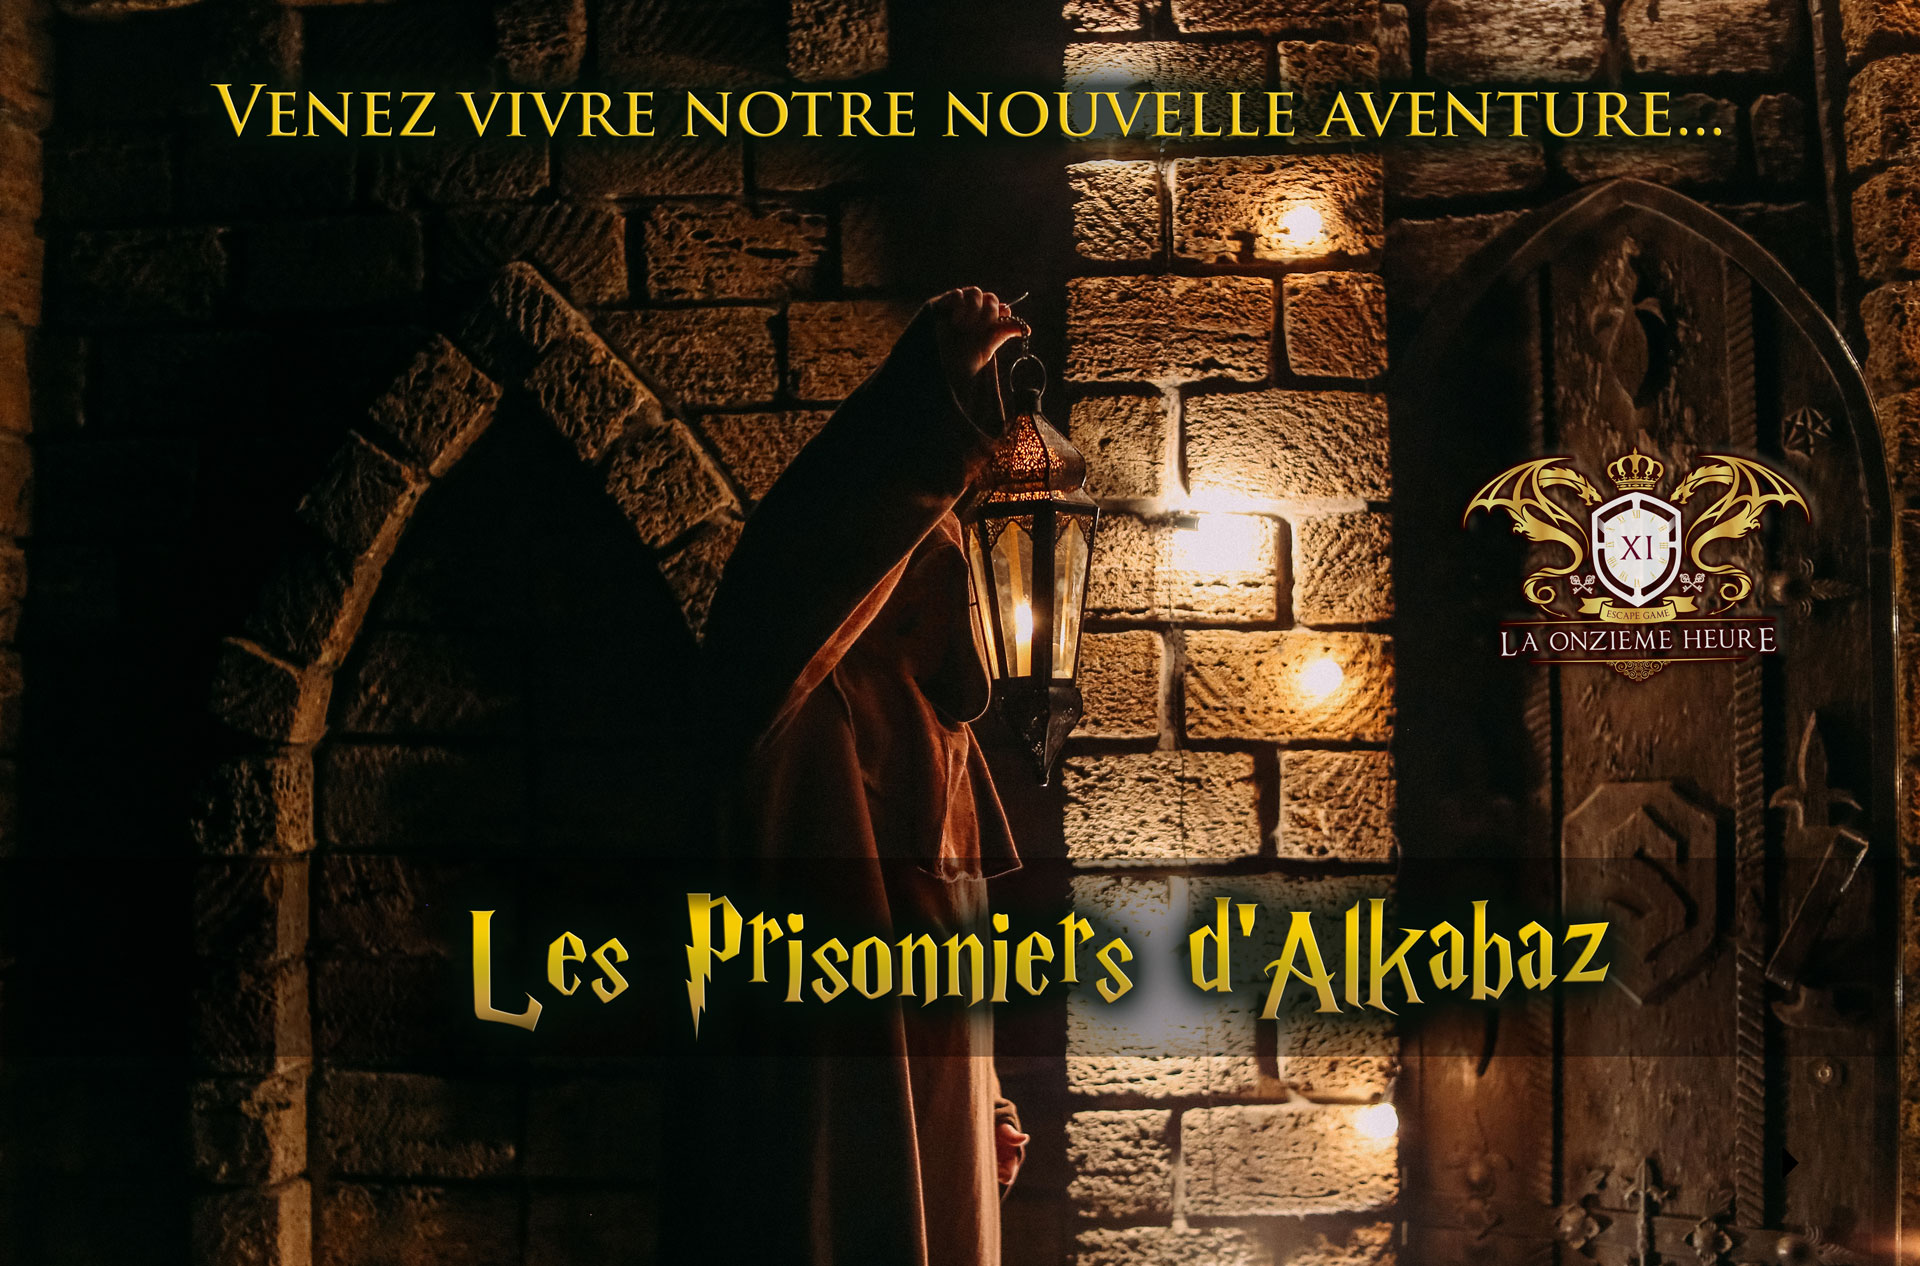 Les prisonniers d'Alkabaz